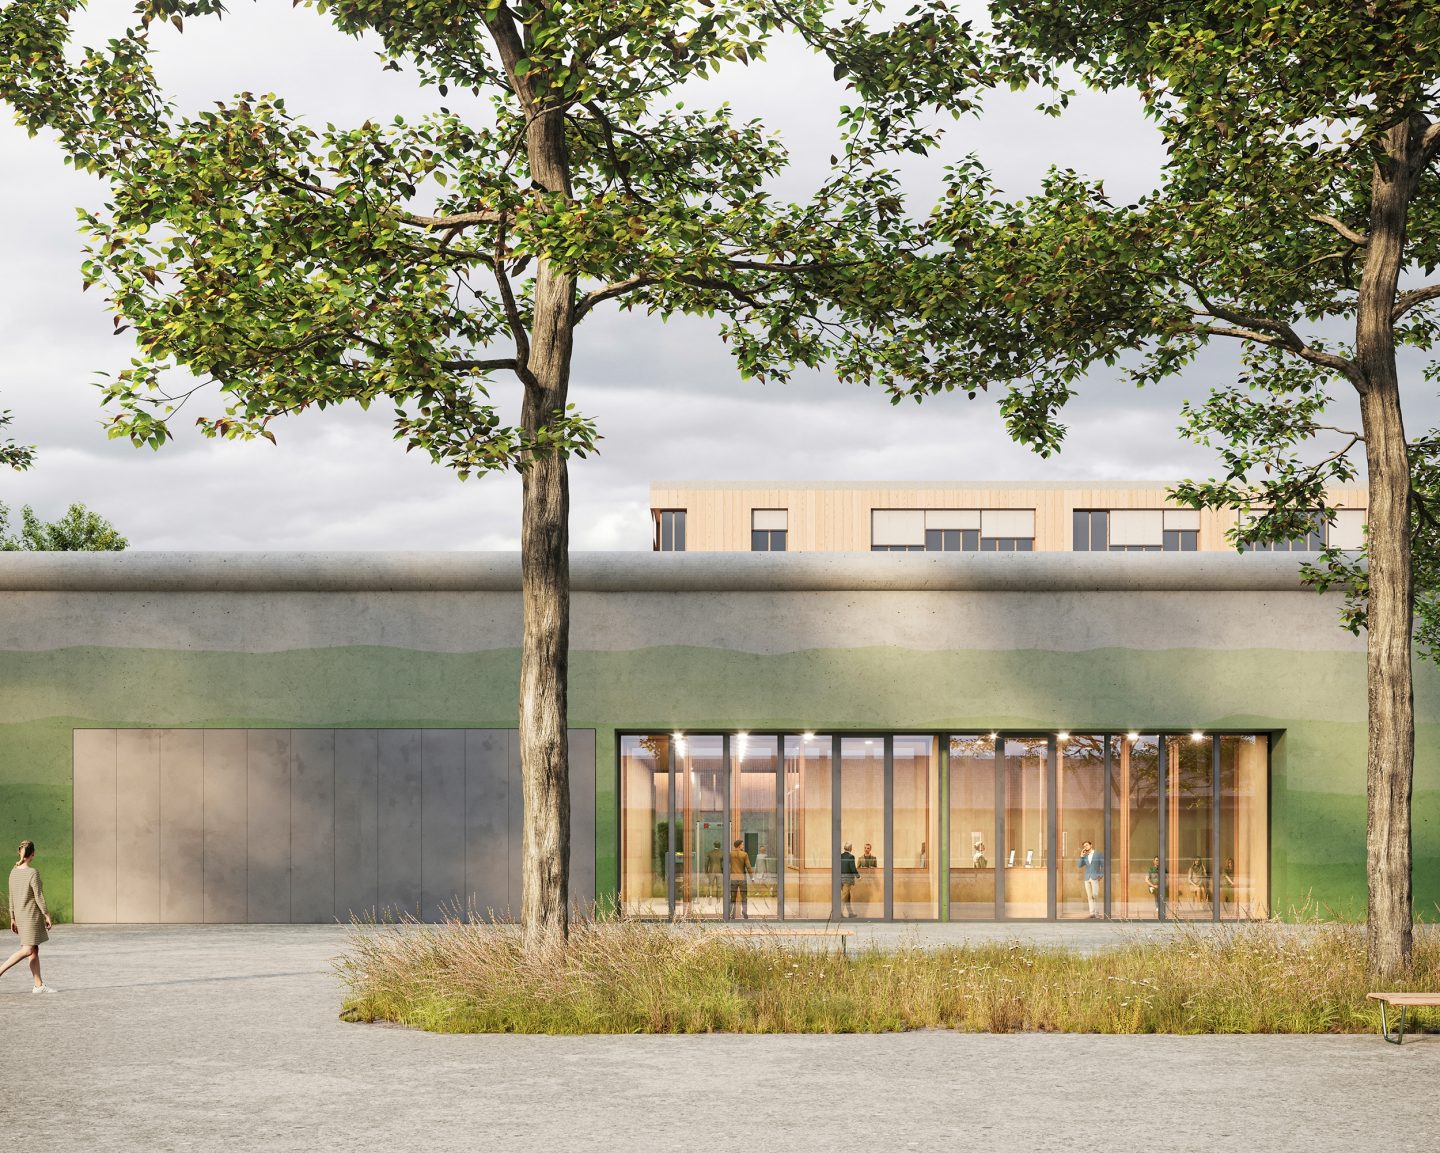 Pénitentiaire des Grands-Marais, Orbe, VD. Hildebrand Studios AG, Büro für Architektur und Städtebau, Zürich